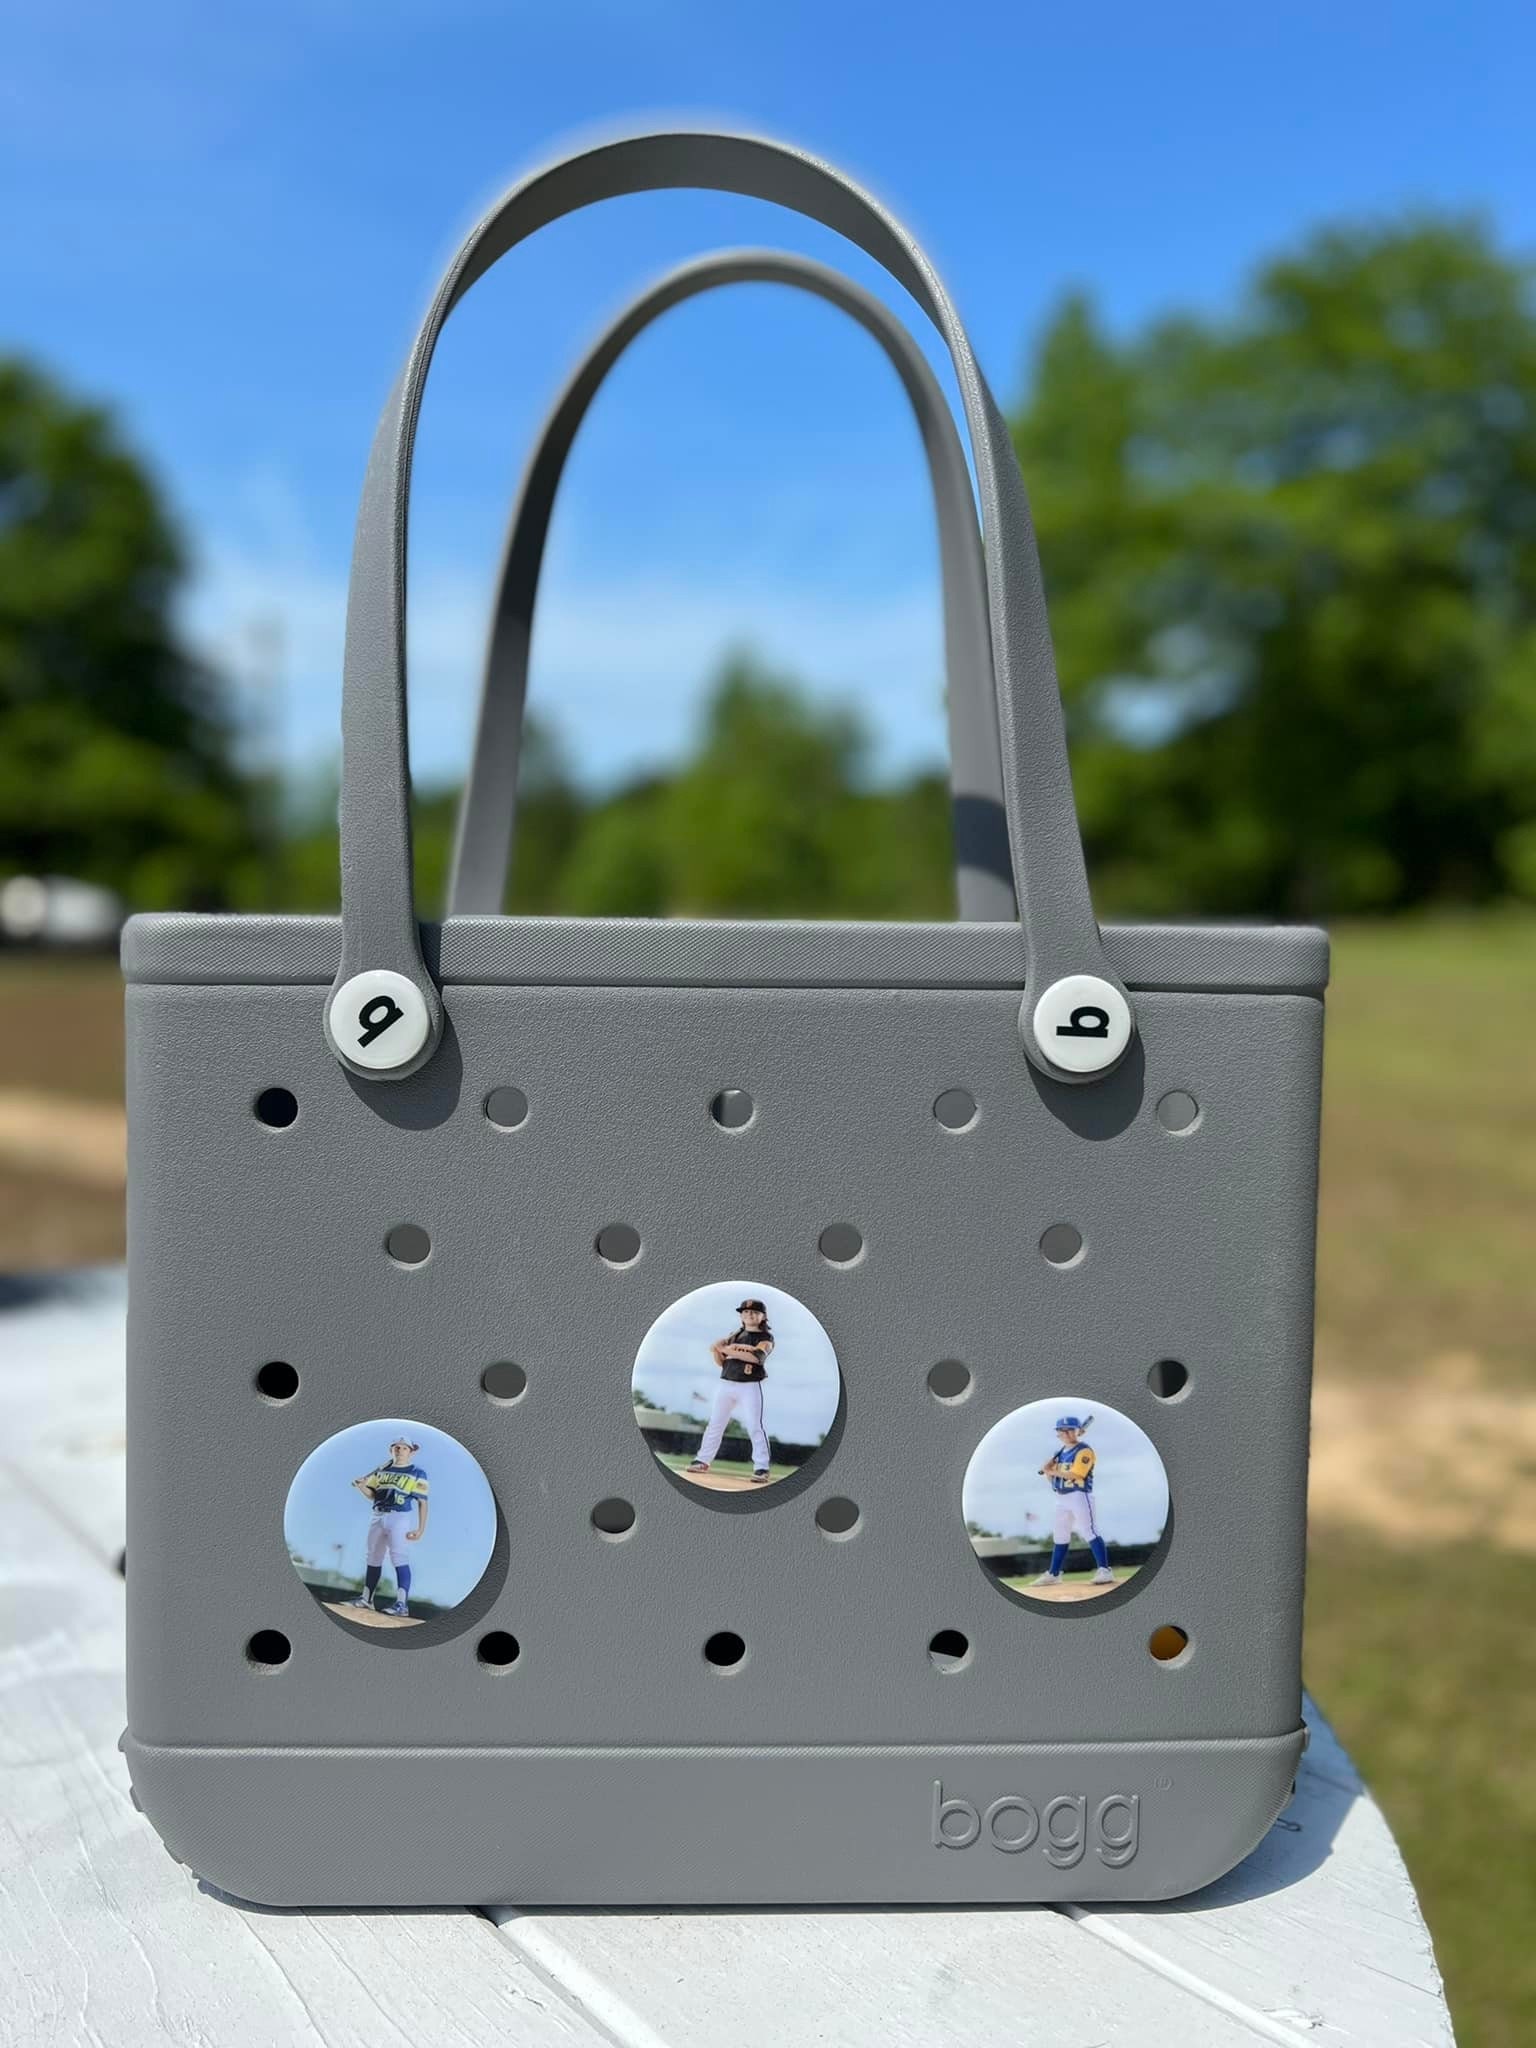 Mascot Bogg Bag Tag, Bogg Bag Charm, Bogg Bag Accessory, Bogg Bag Button,  Simply Southern Charm, Pool Bag Charm